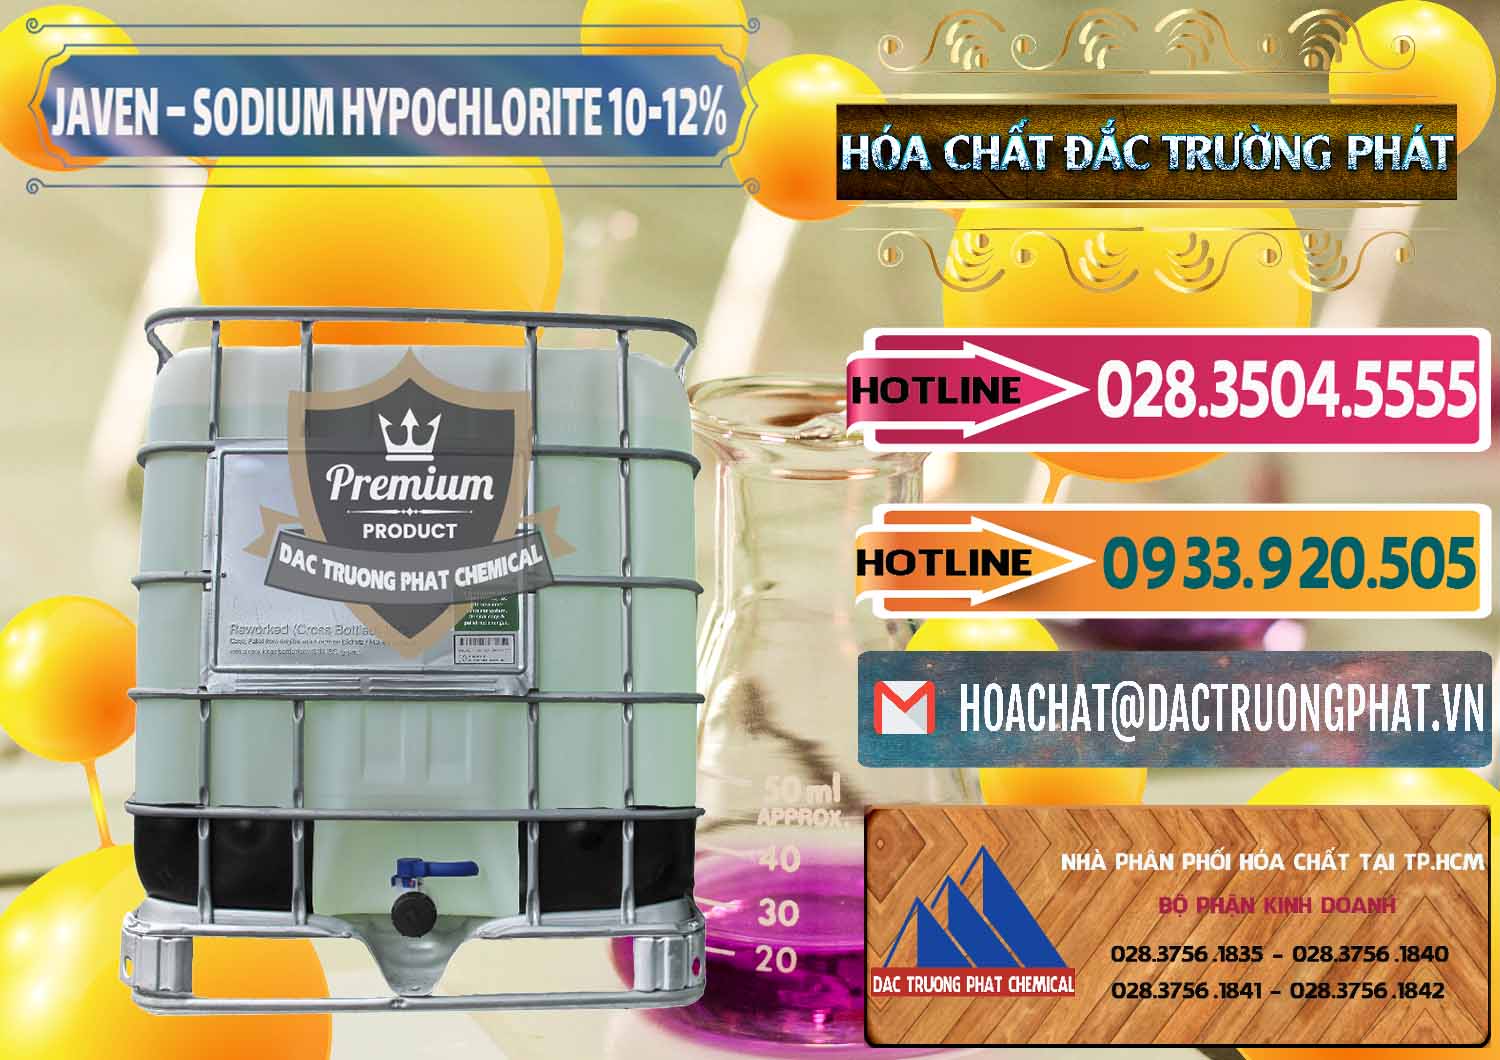 Cty kinh doanh _ bán Javen - Sodium Hypochlorite 10-12% Việt Nam - 0188 - Cty chuyên kinh doanh _ bán hóa chất tại TP.HCM - dactruongphat.vn